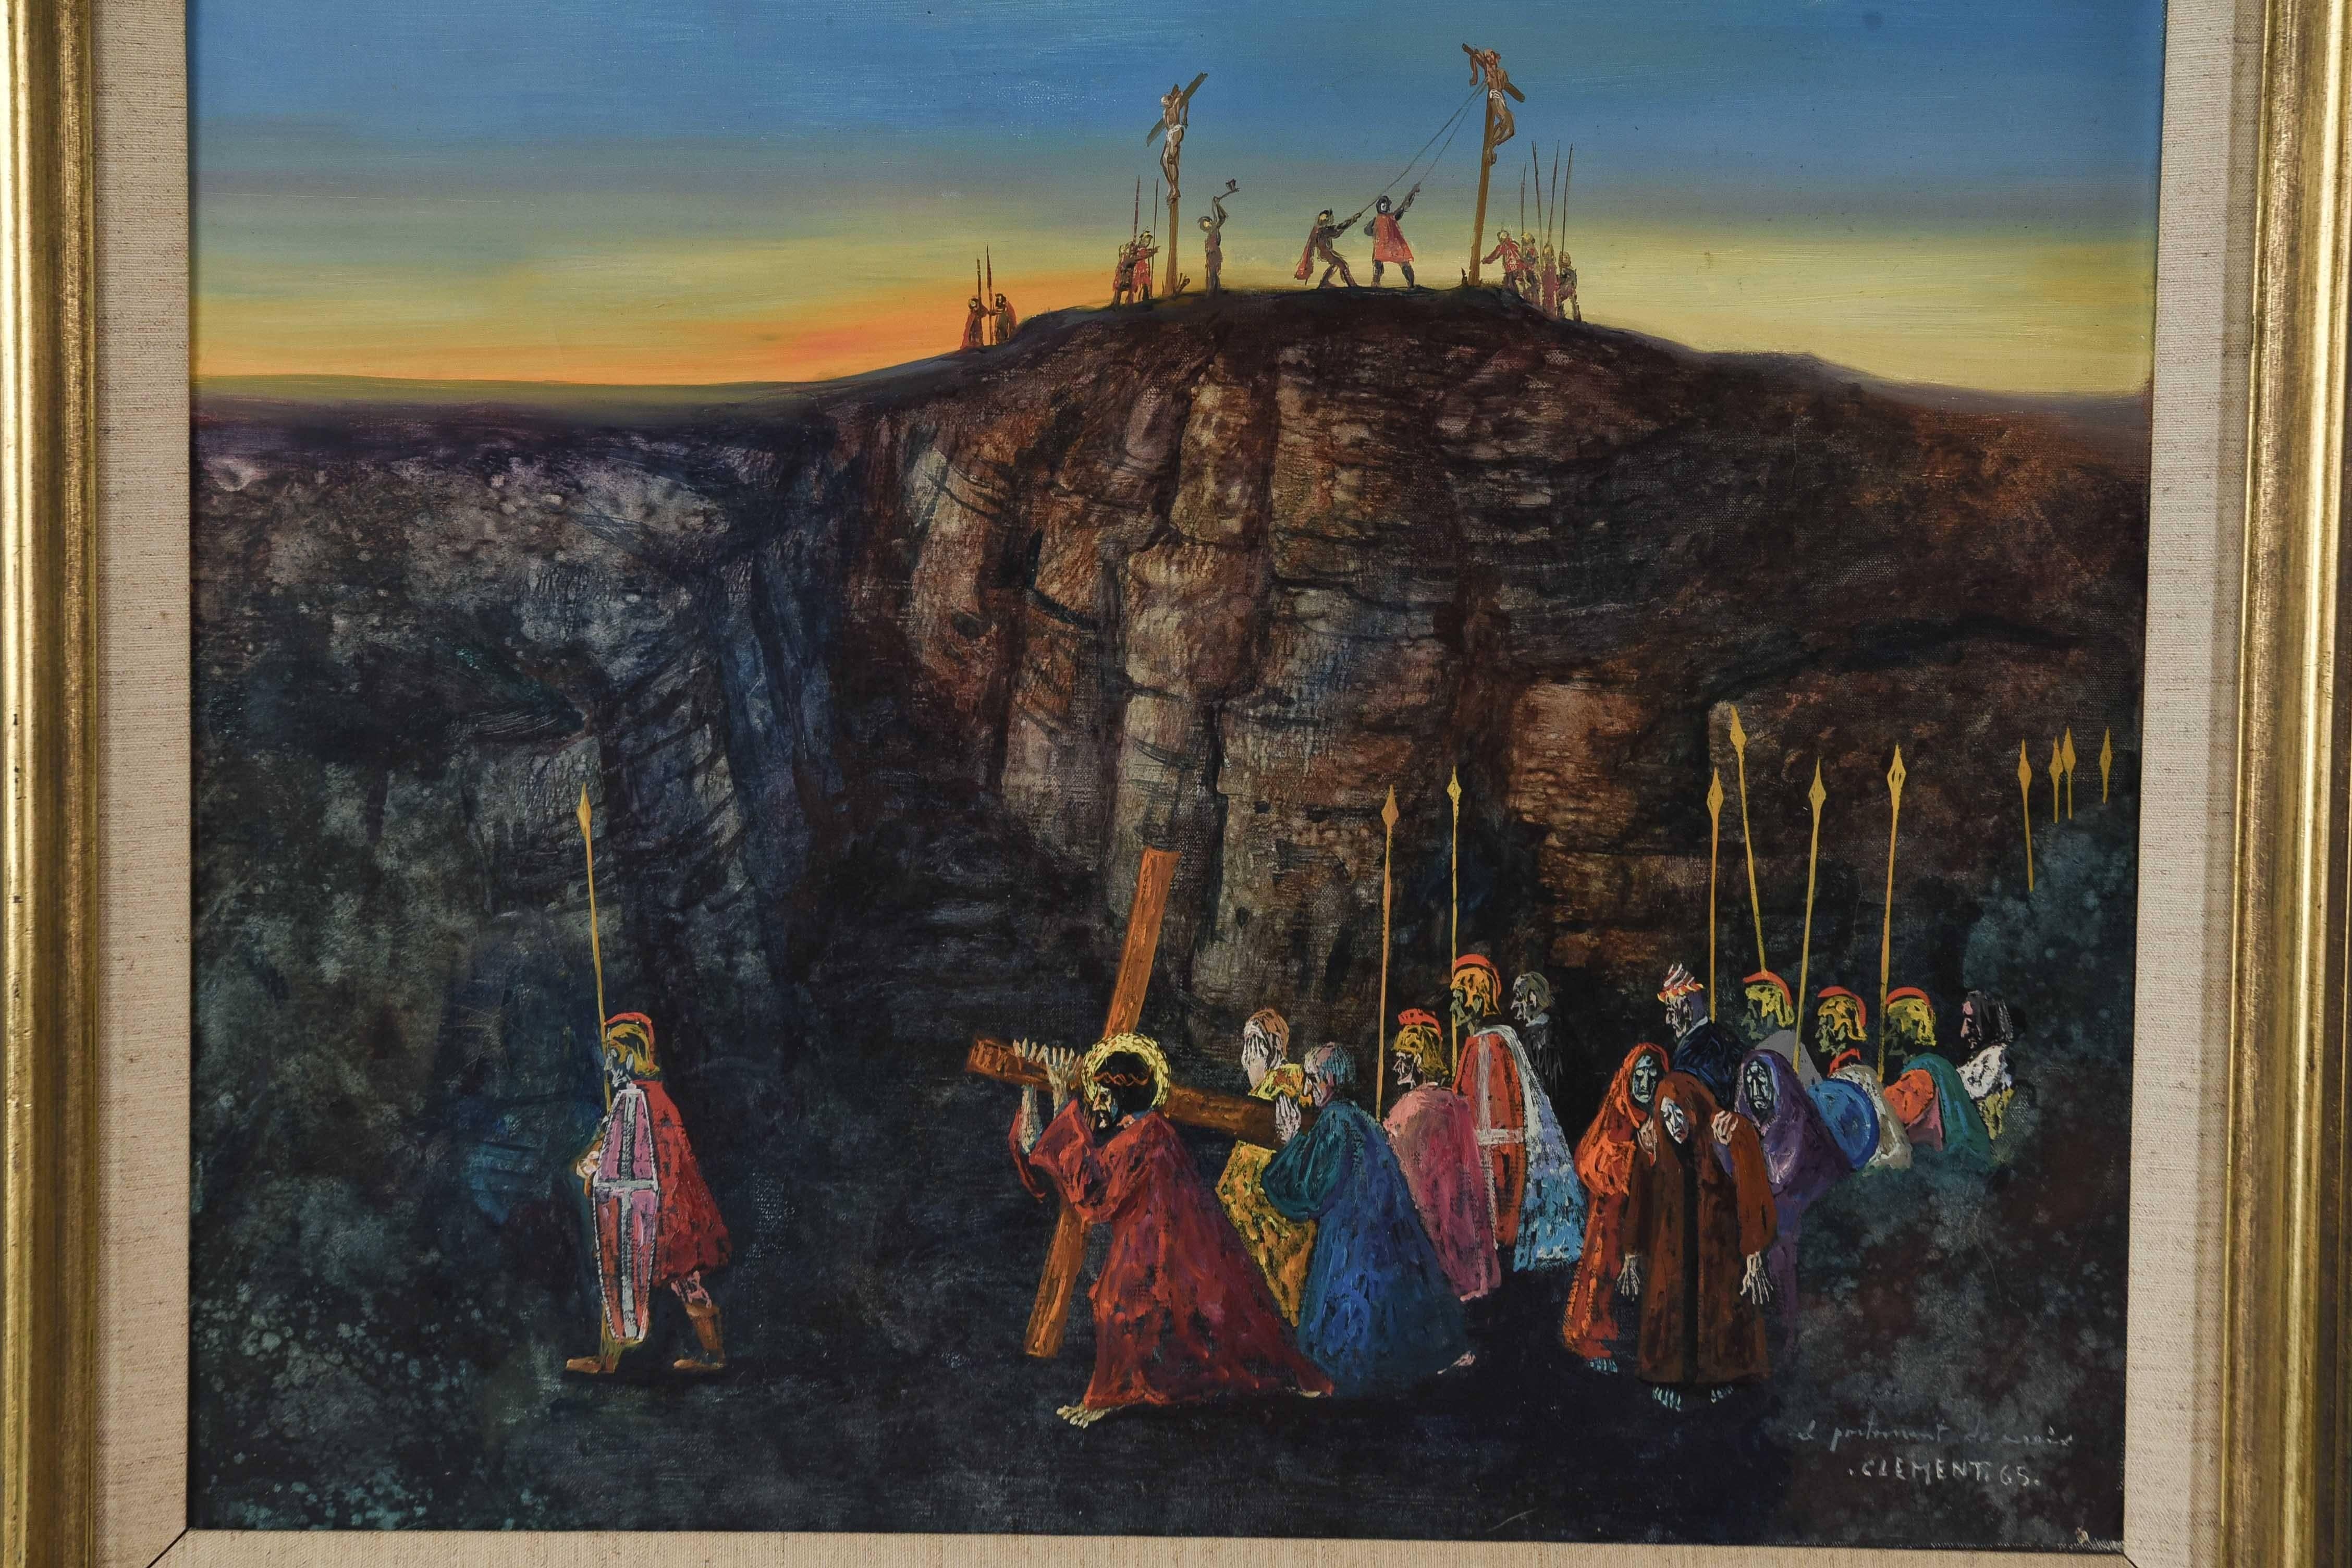 Scène surréaliste de l'artiste français classé Jean Pierre Clément représentant les moments précédant la crucifixion d'un personnage saint, probablement Jésus-Christ, comme en témoignent la couronne et l'auréole lumineuse derrière lui. Au loin, deux